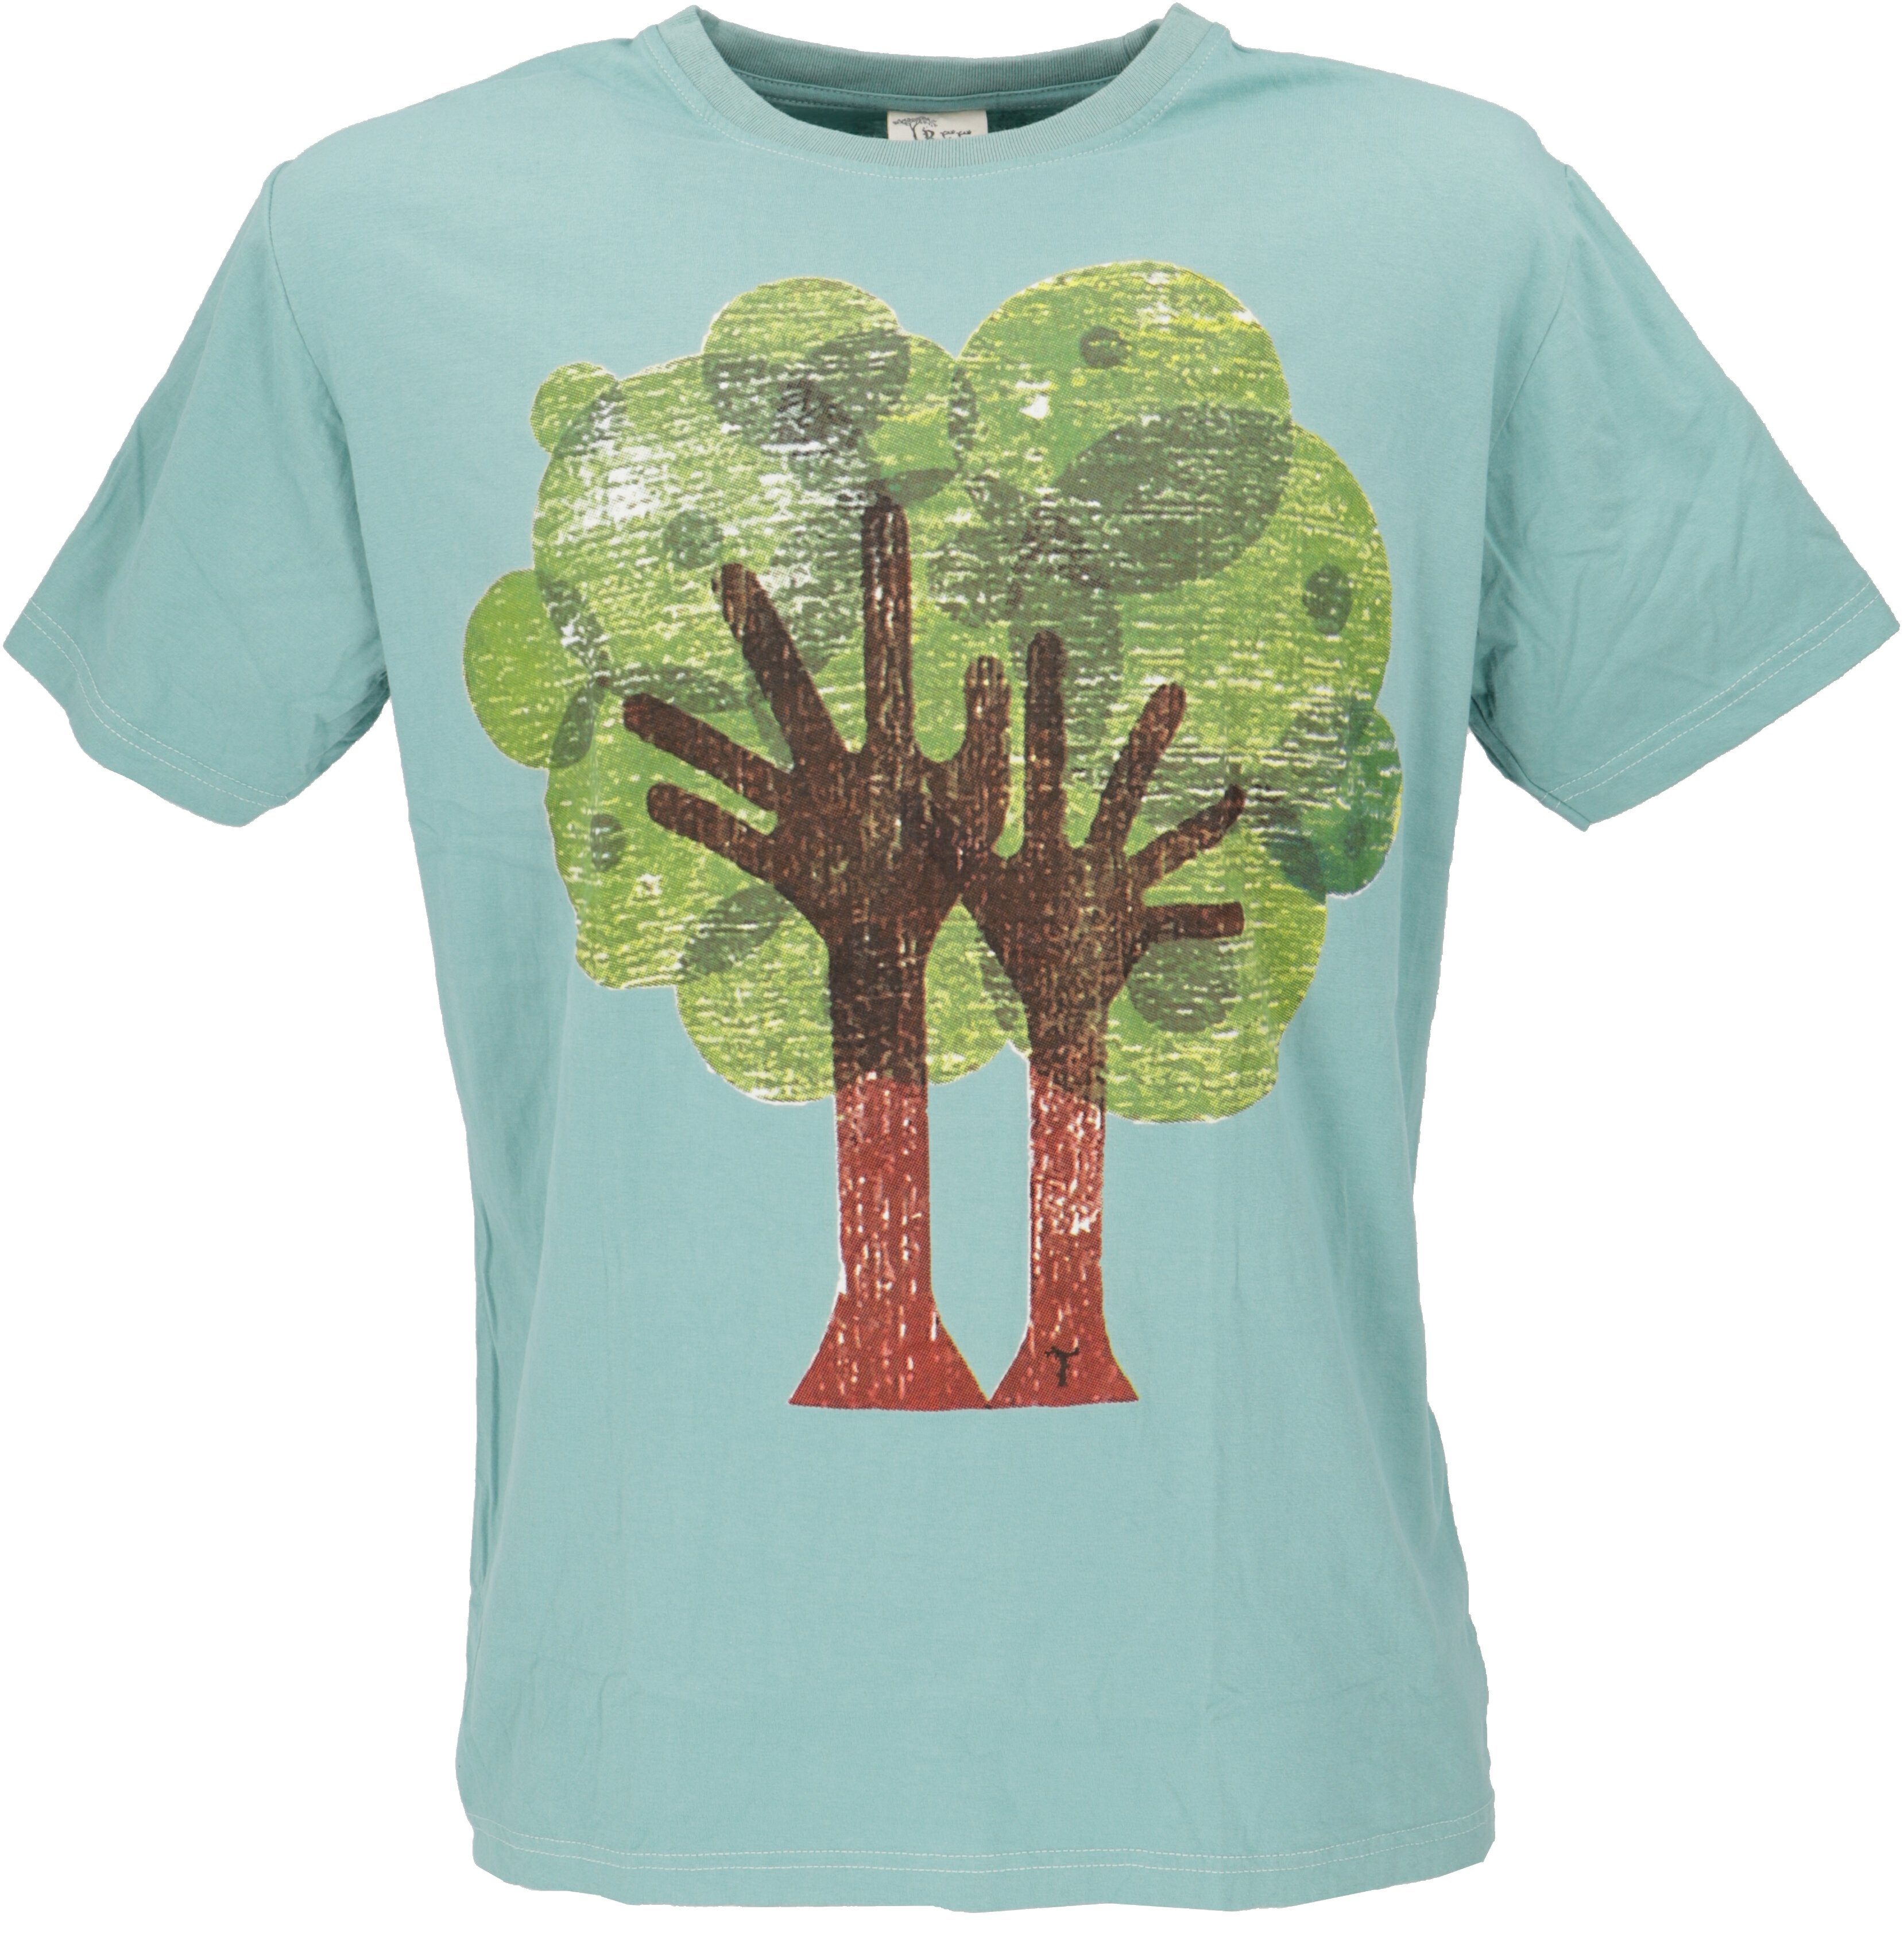 Guru-Shop T-Shirt Retro T-Shirt, Tree save earth T-Shirt -.. Retro Tree/aqua